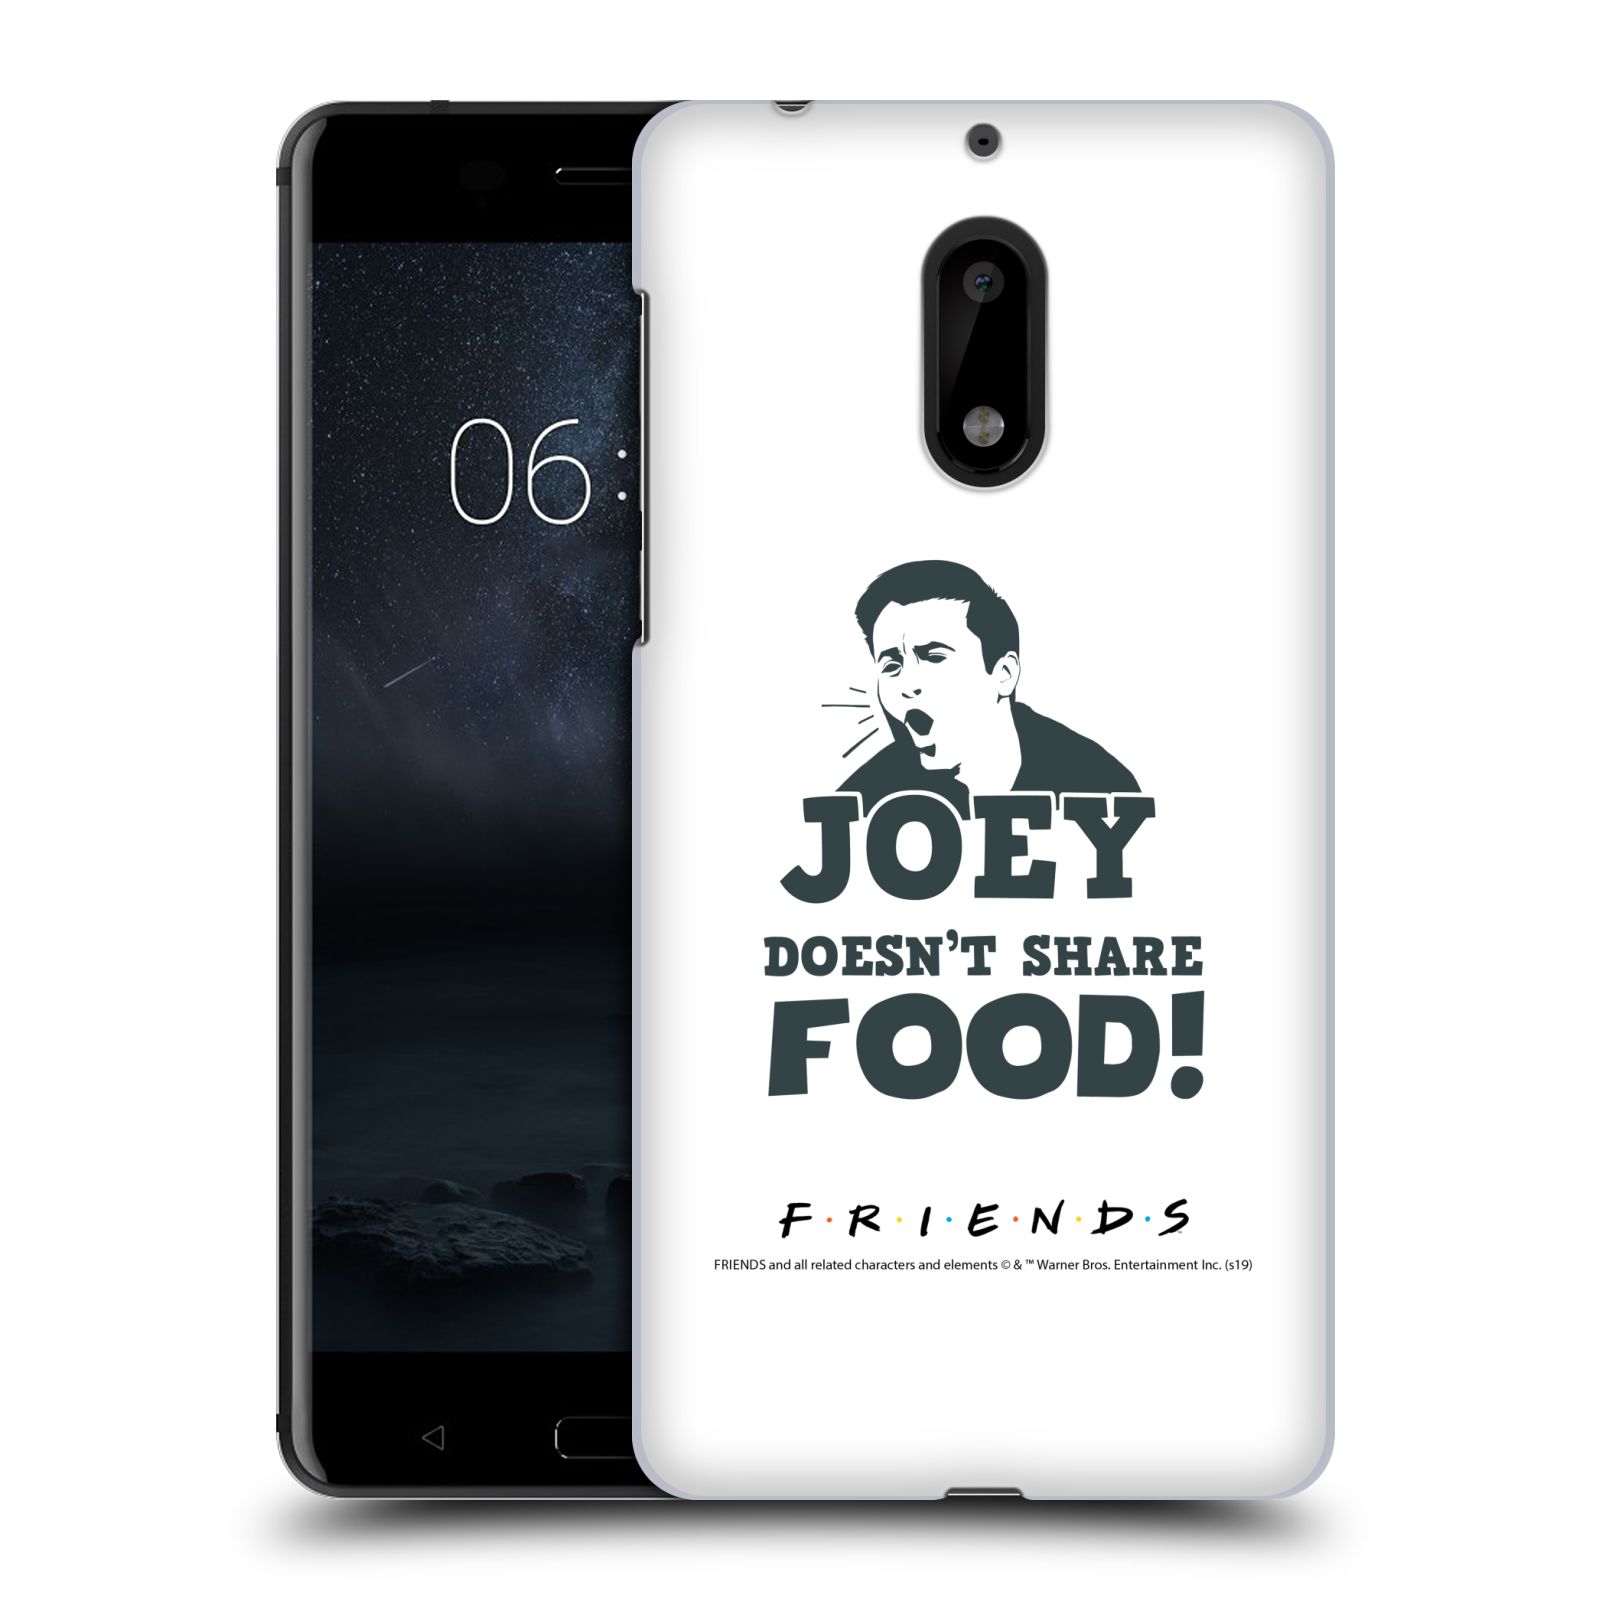 Pouzdro na mobil Nokia 6 - HEAD CASE - Seriál Přátelé - Joey se o jídlo nedělí